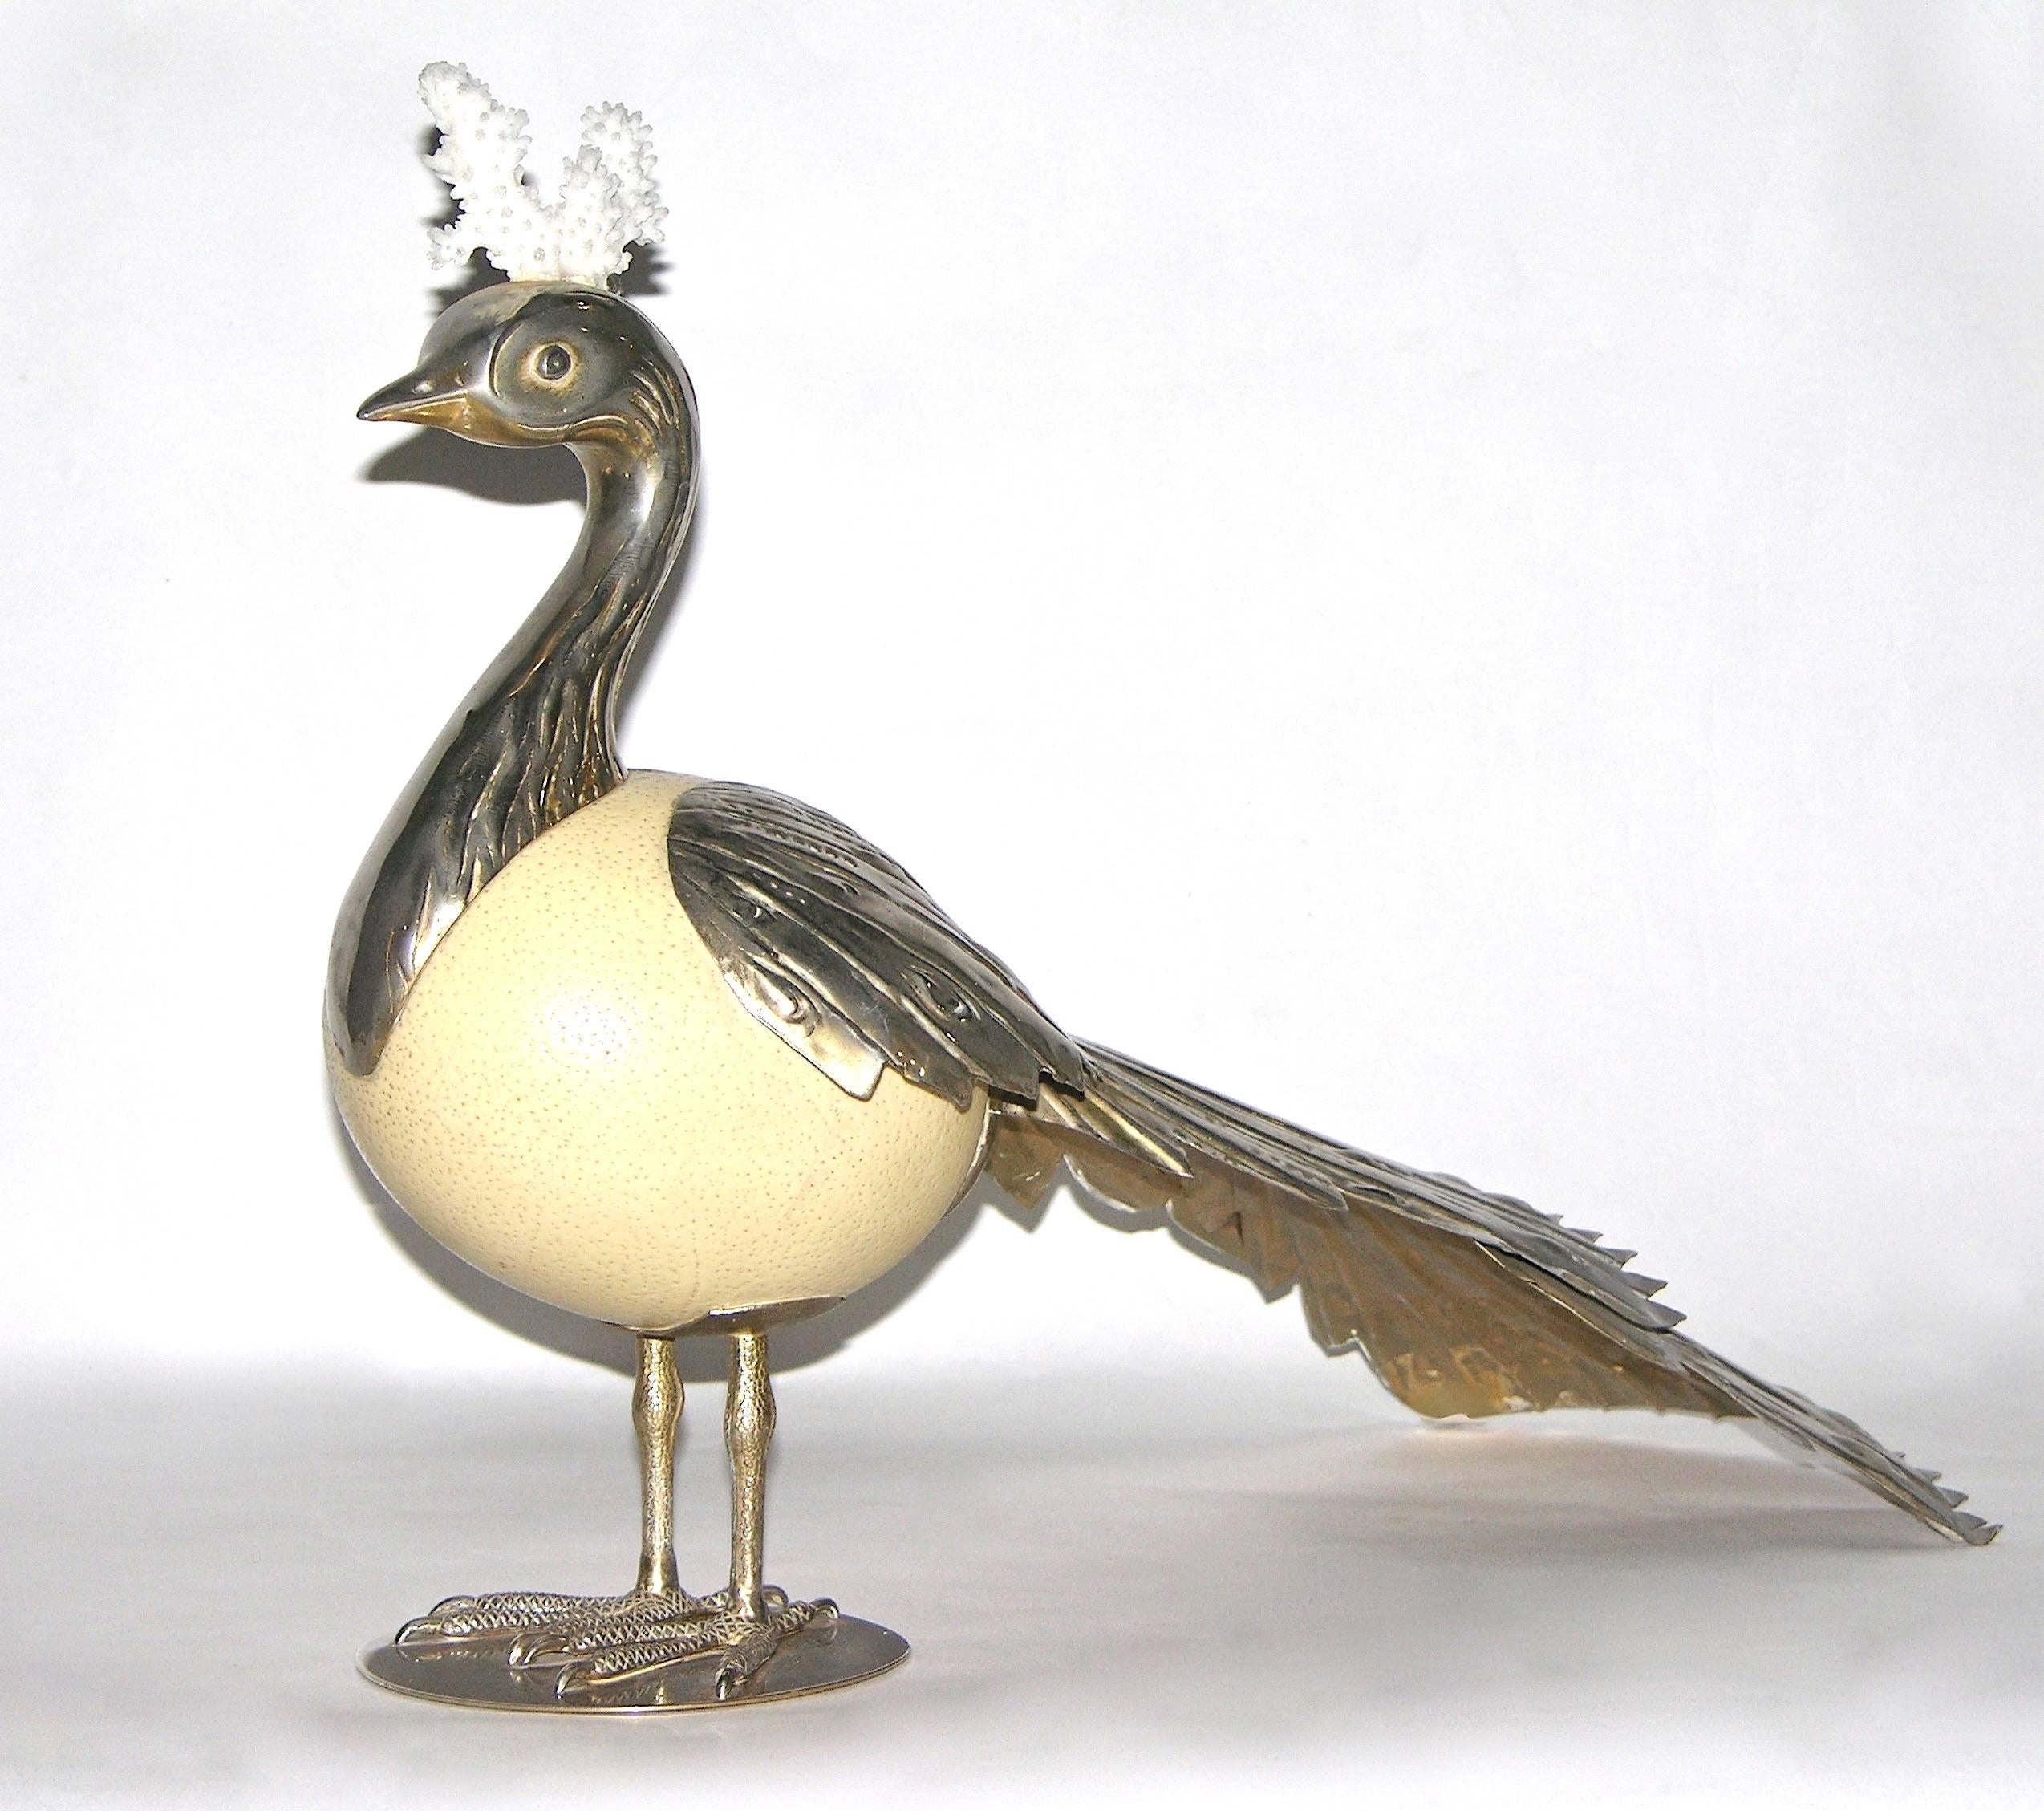 Dieses einzigartige italienische Kunstwerk, eine Vogelskulptur von Antonio Pavia, ist ein seltenes, hochgradig sammelwürdiges, vollständig handgefertigtes Objekt mit einem Straußenei als Körper, verziert mit einem beeindruckenden ziselierten,